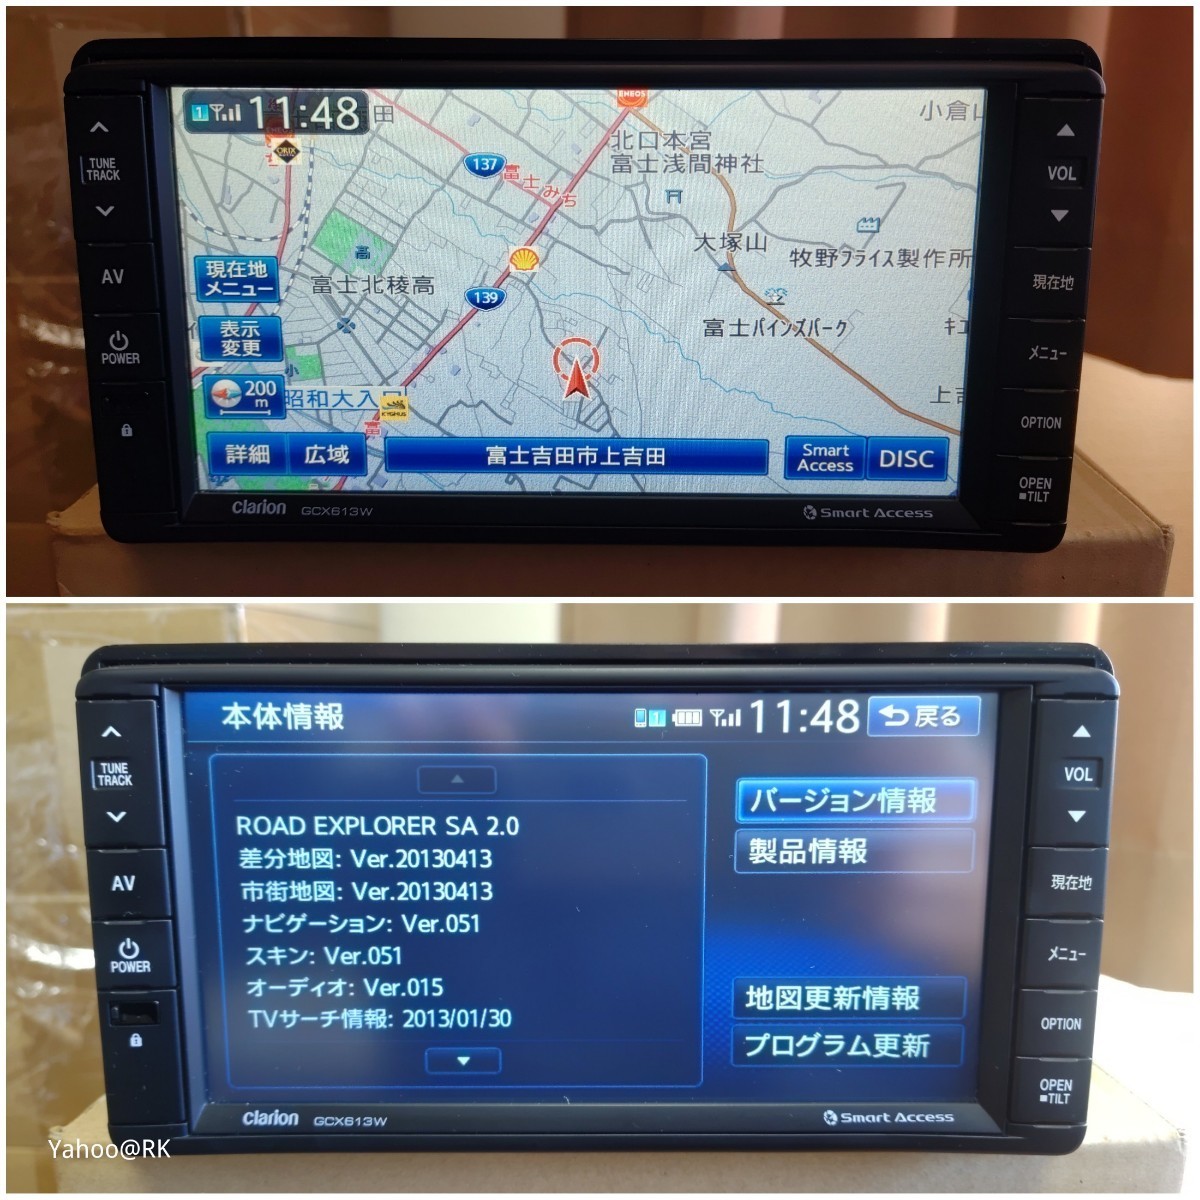  Mitsubishi оригинальная навигация GCX613W Clarion NX613 такой же и т.п. товар DVD воспроизведение Bluetooth телевизор Full seg SD карта USB iPod